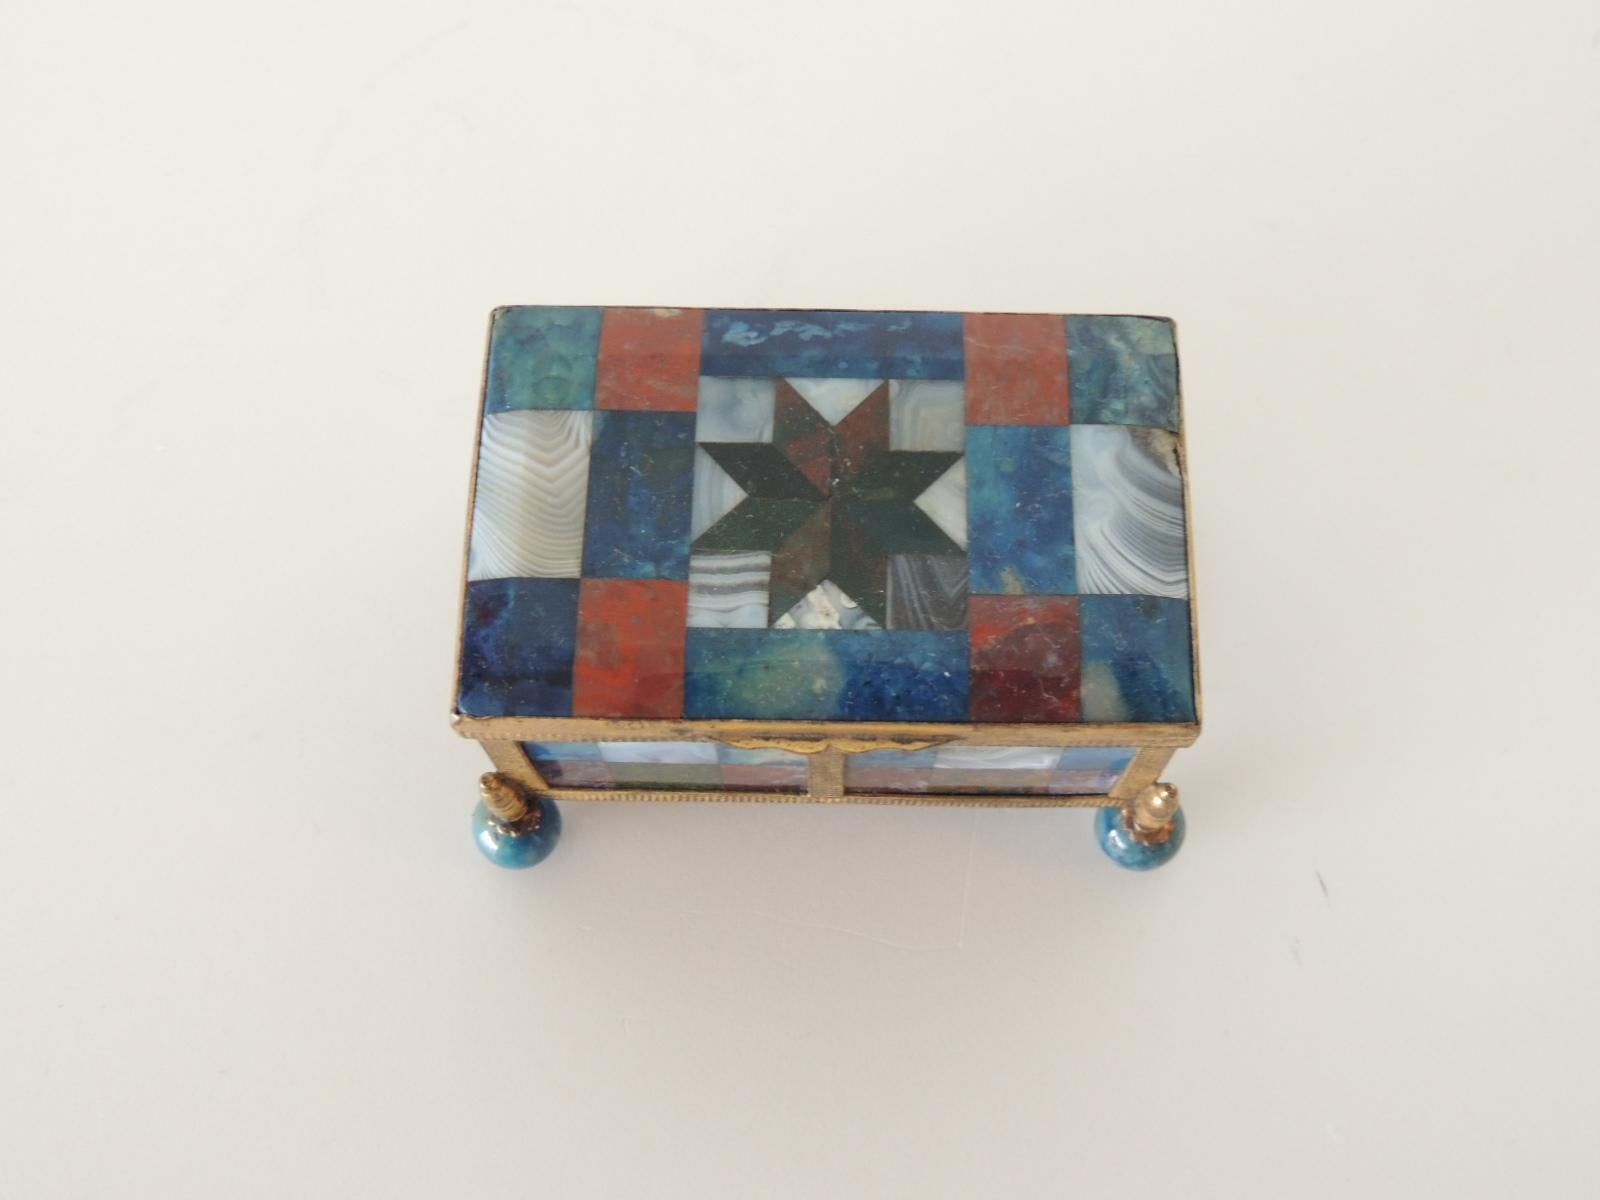 Antique Miniature agate specimen ormolu-mounted decorative box.
Size: 3.5